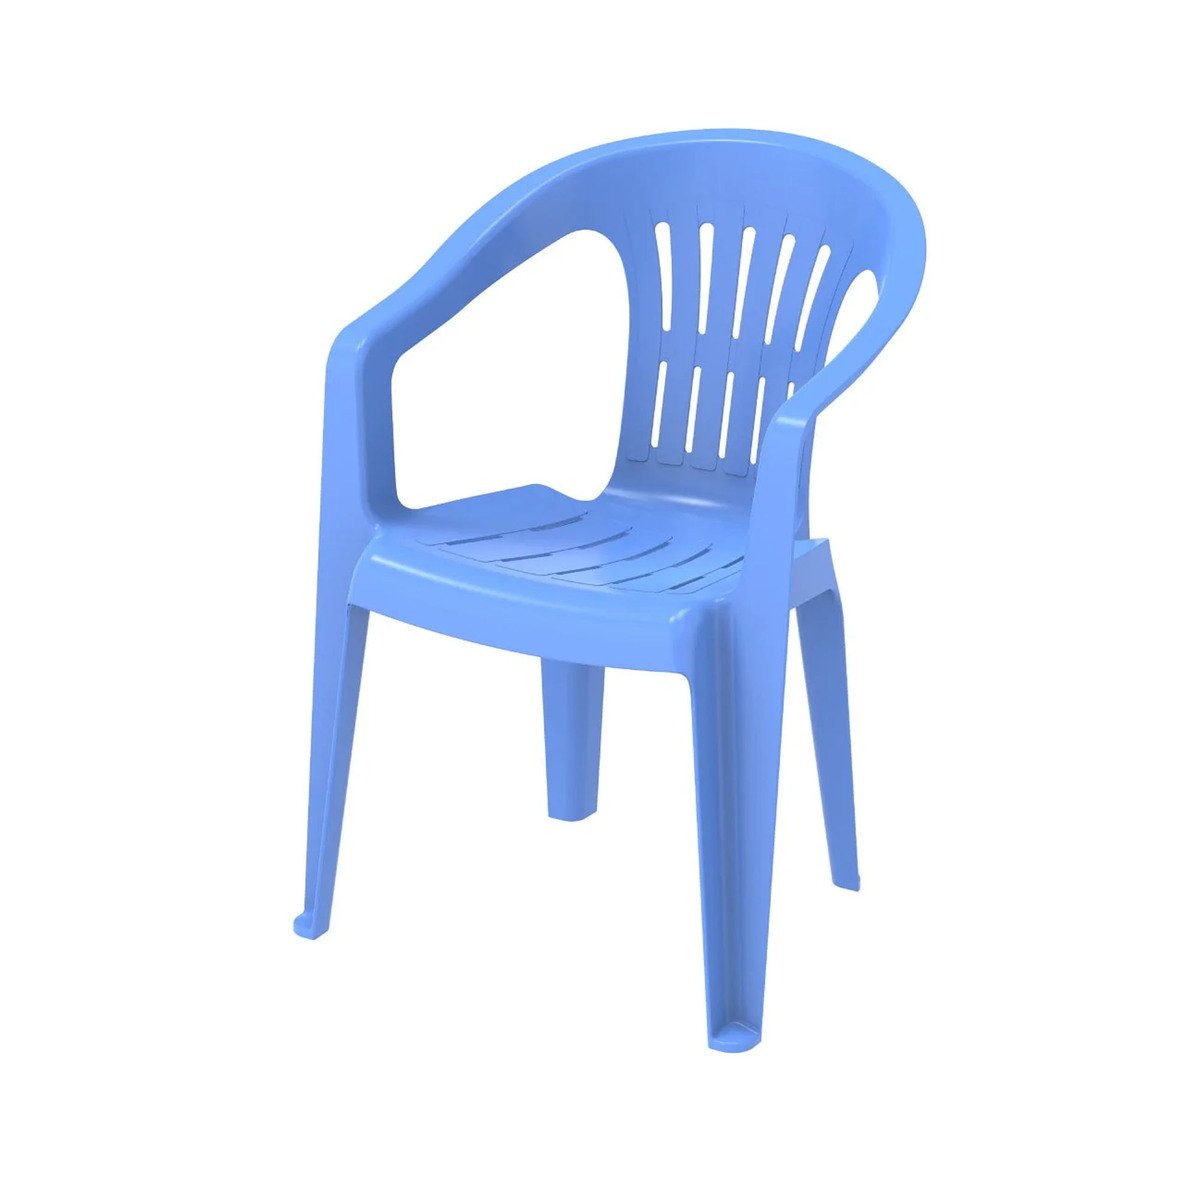 كوزموبلاست كرسي للحديقة الخارجية IFOFGD002 بألوان متنوعة